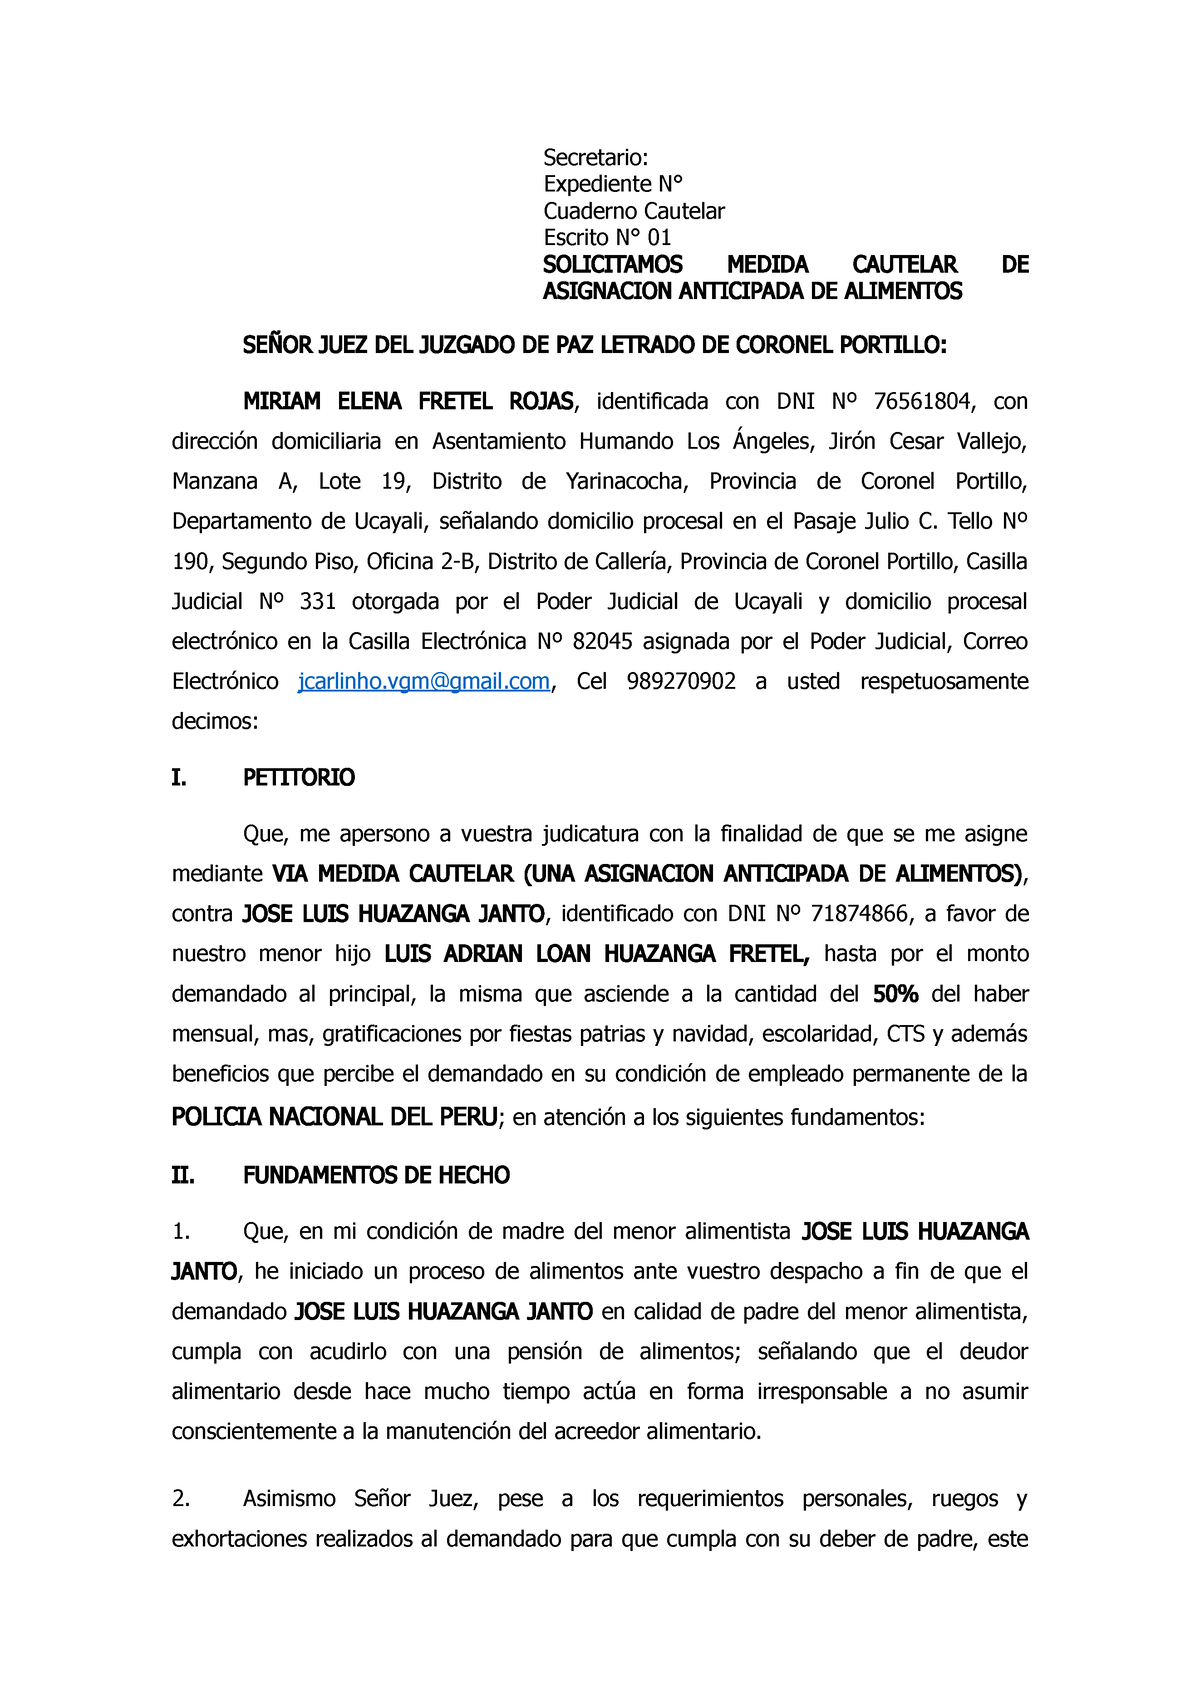 Asignacion Anticipada Miriam Vs Jose Luis Secretario Expediente N° Cuaderno Cautelar Escrito 5851